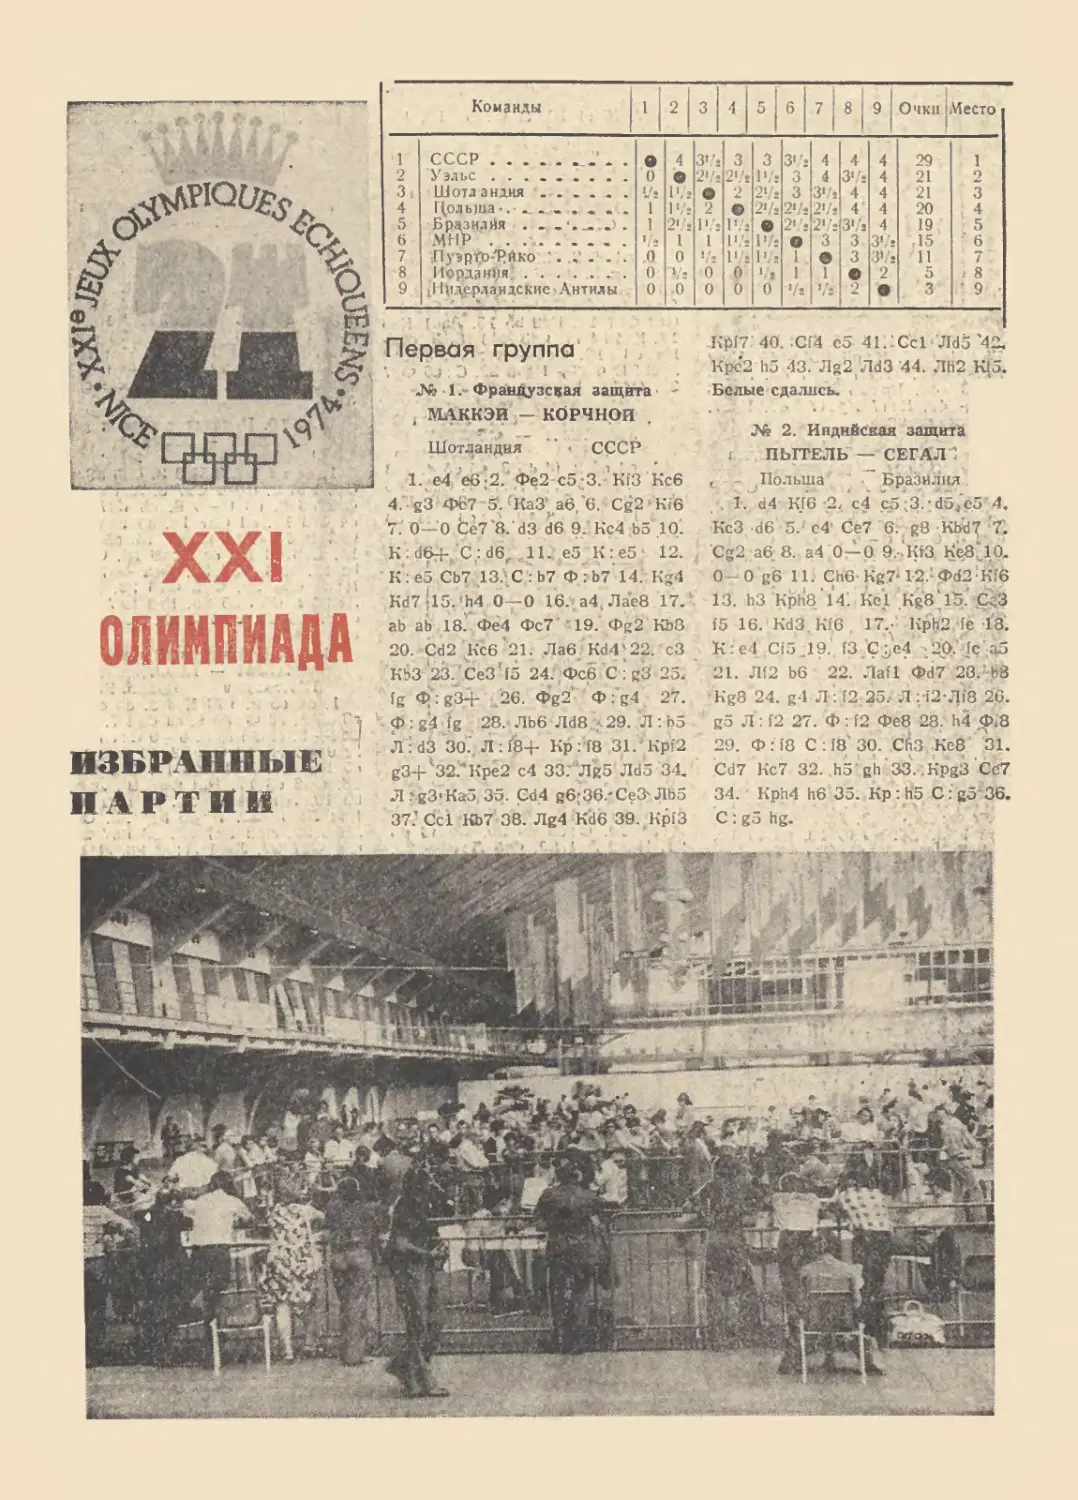 XXI Олимпиада Ницца, 1974 г.
Избранные партии первой группы